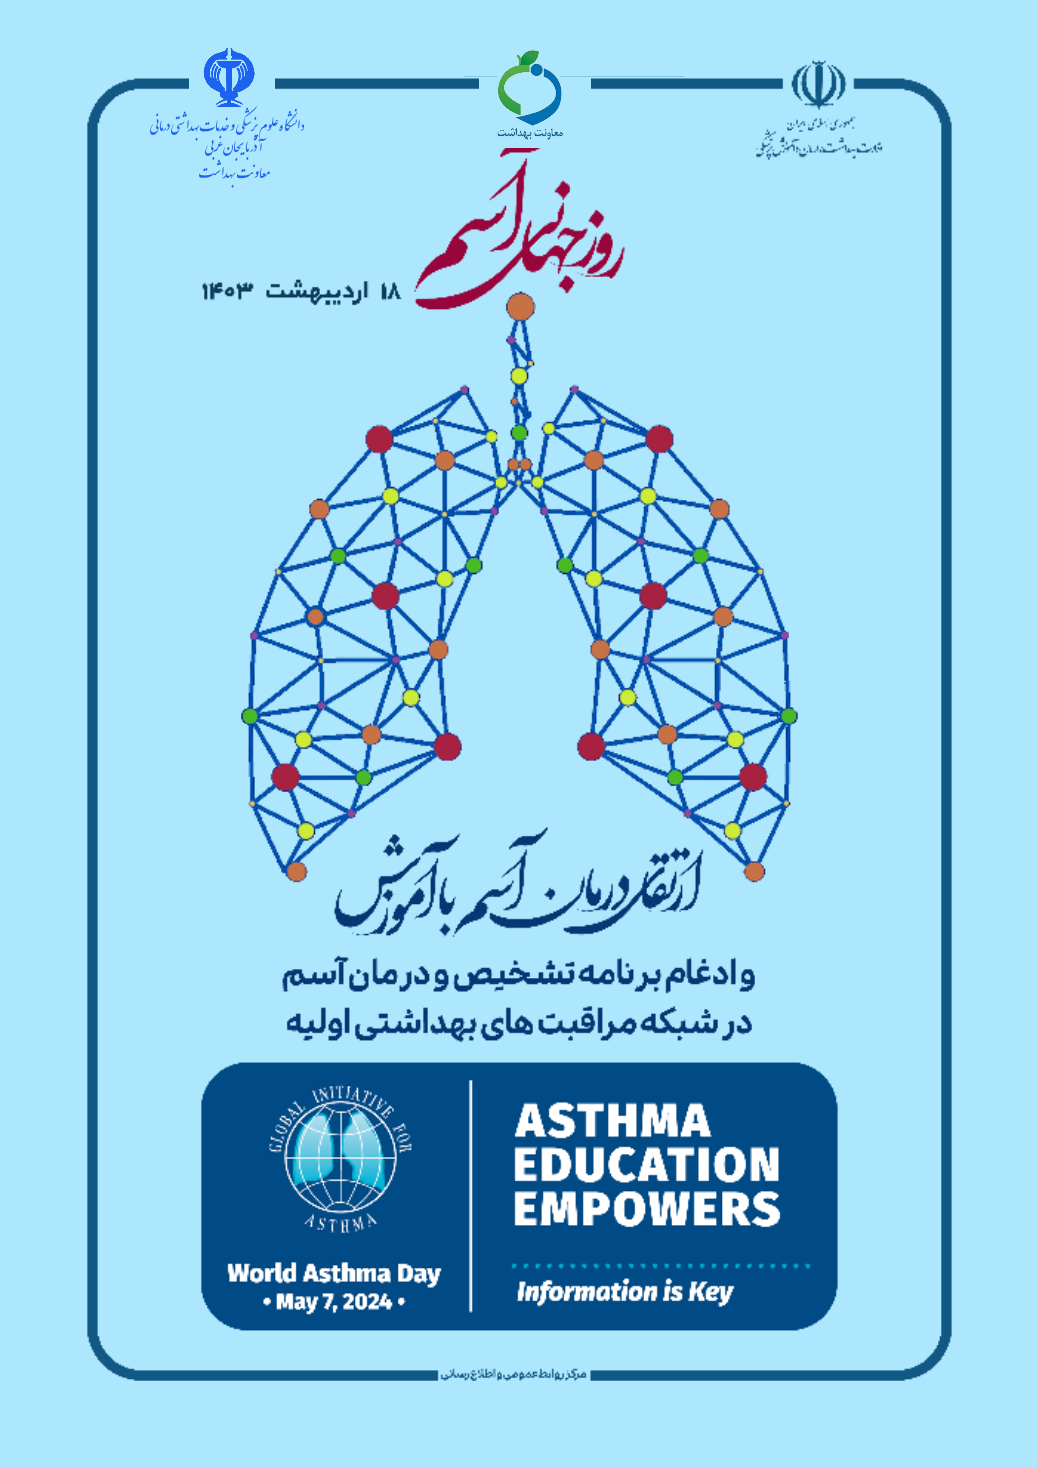 به-مناسبت-روز-جهانی-آسم--18-اردیبهشت-1403--ارتقاء-درمان-آسم-با-آموزش